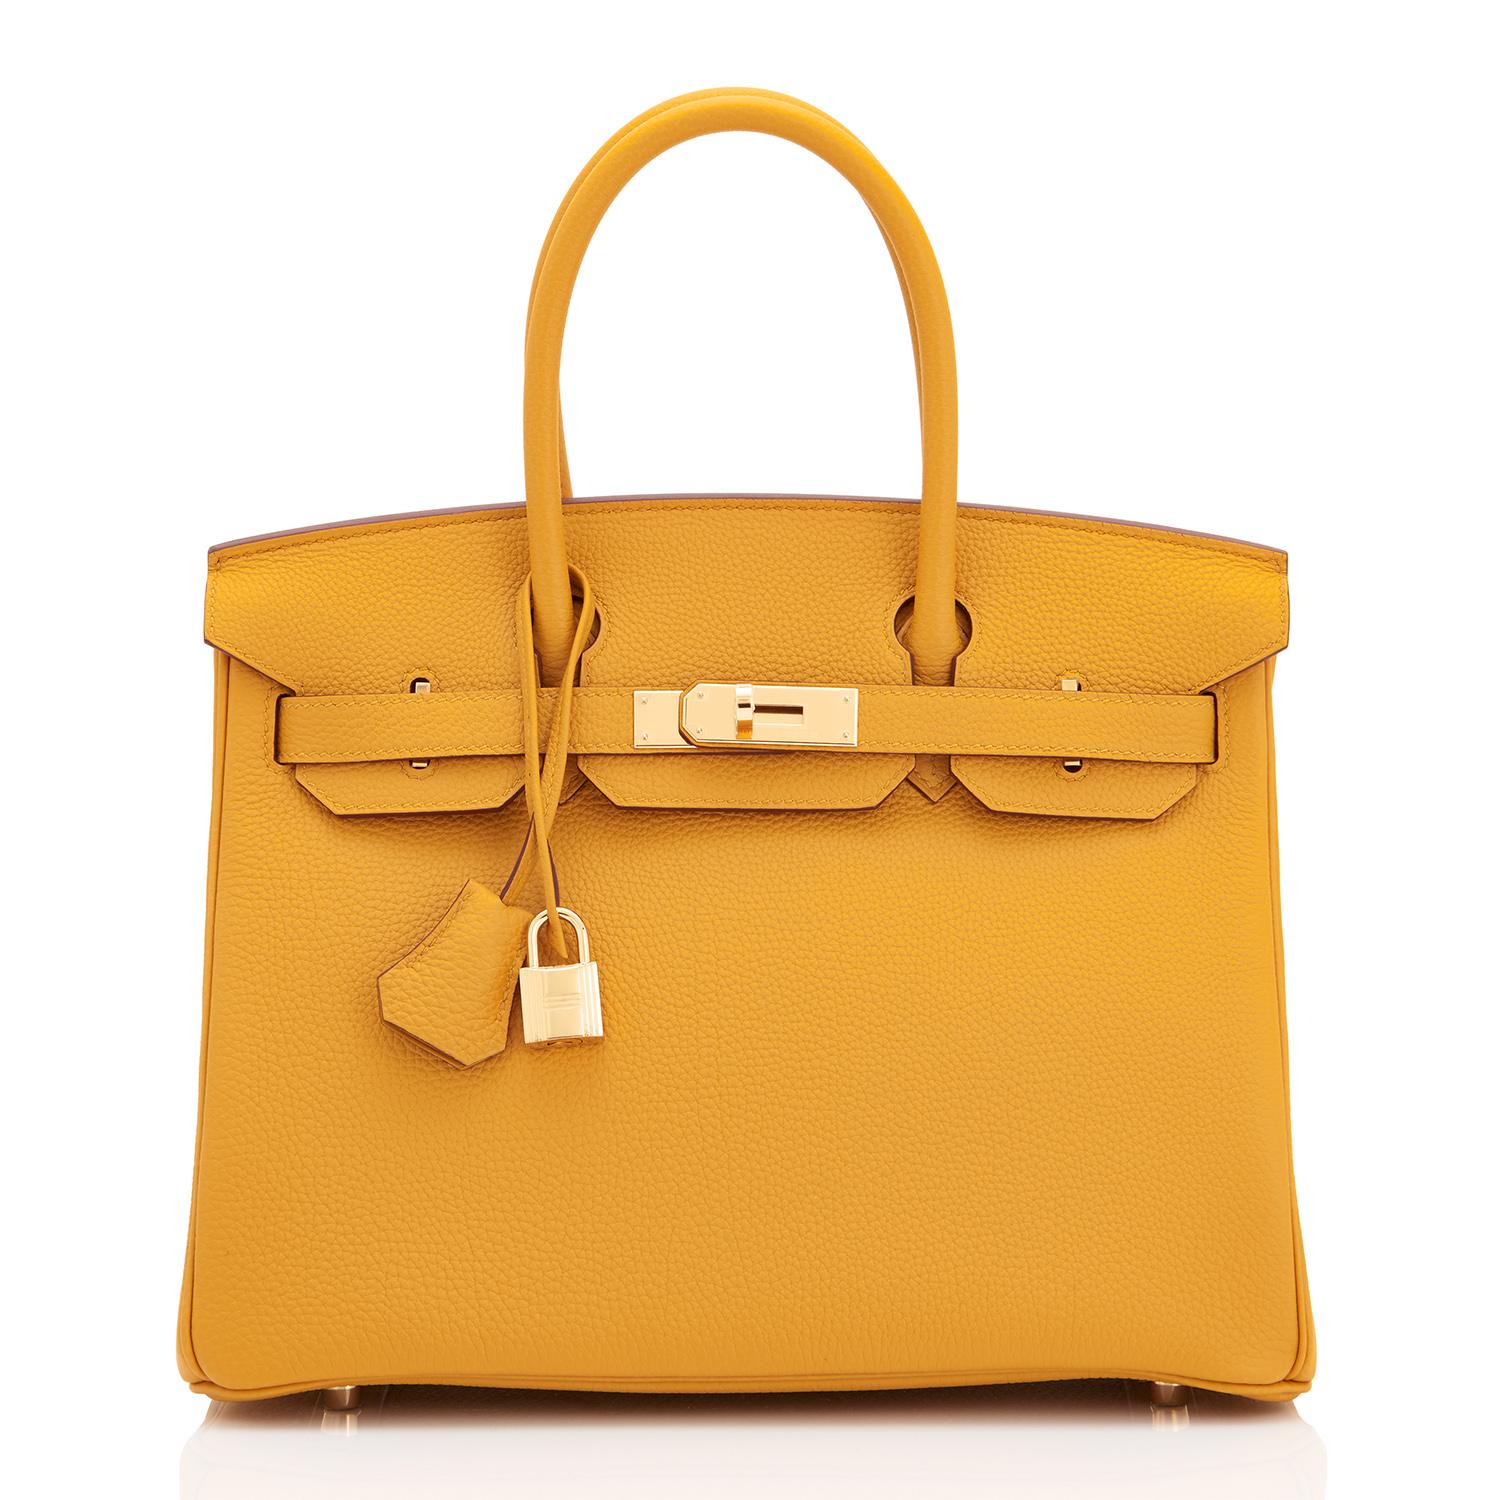 Hermes Birkin 30cm Jaune Ambre Tasche Togo Amber Gelb Gold Hardware (Orange)